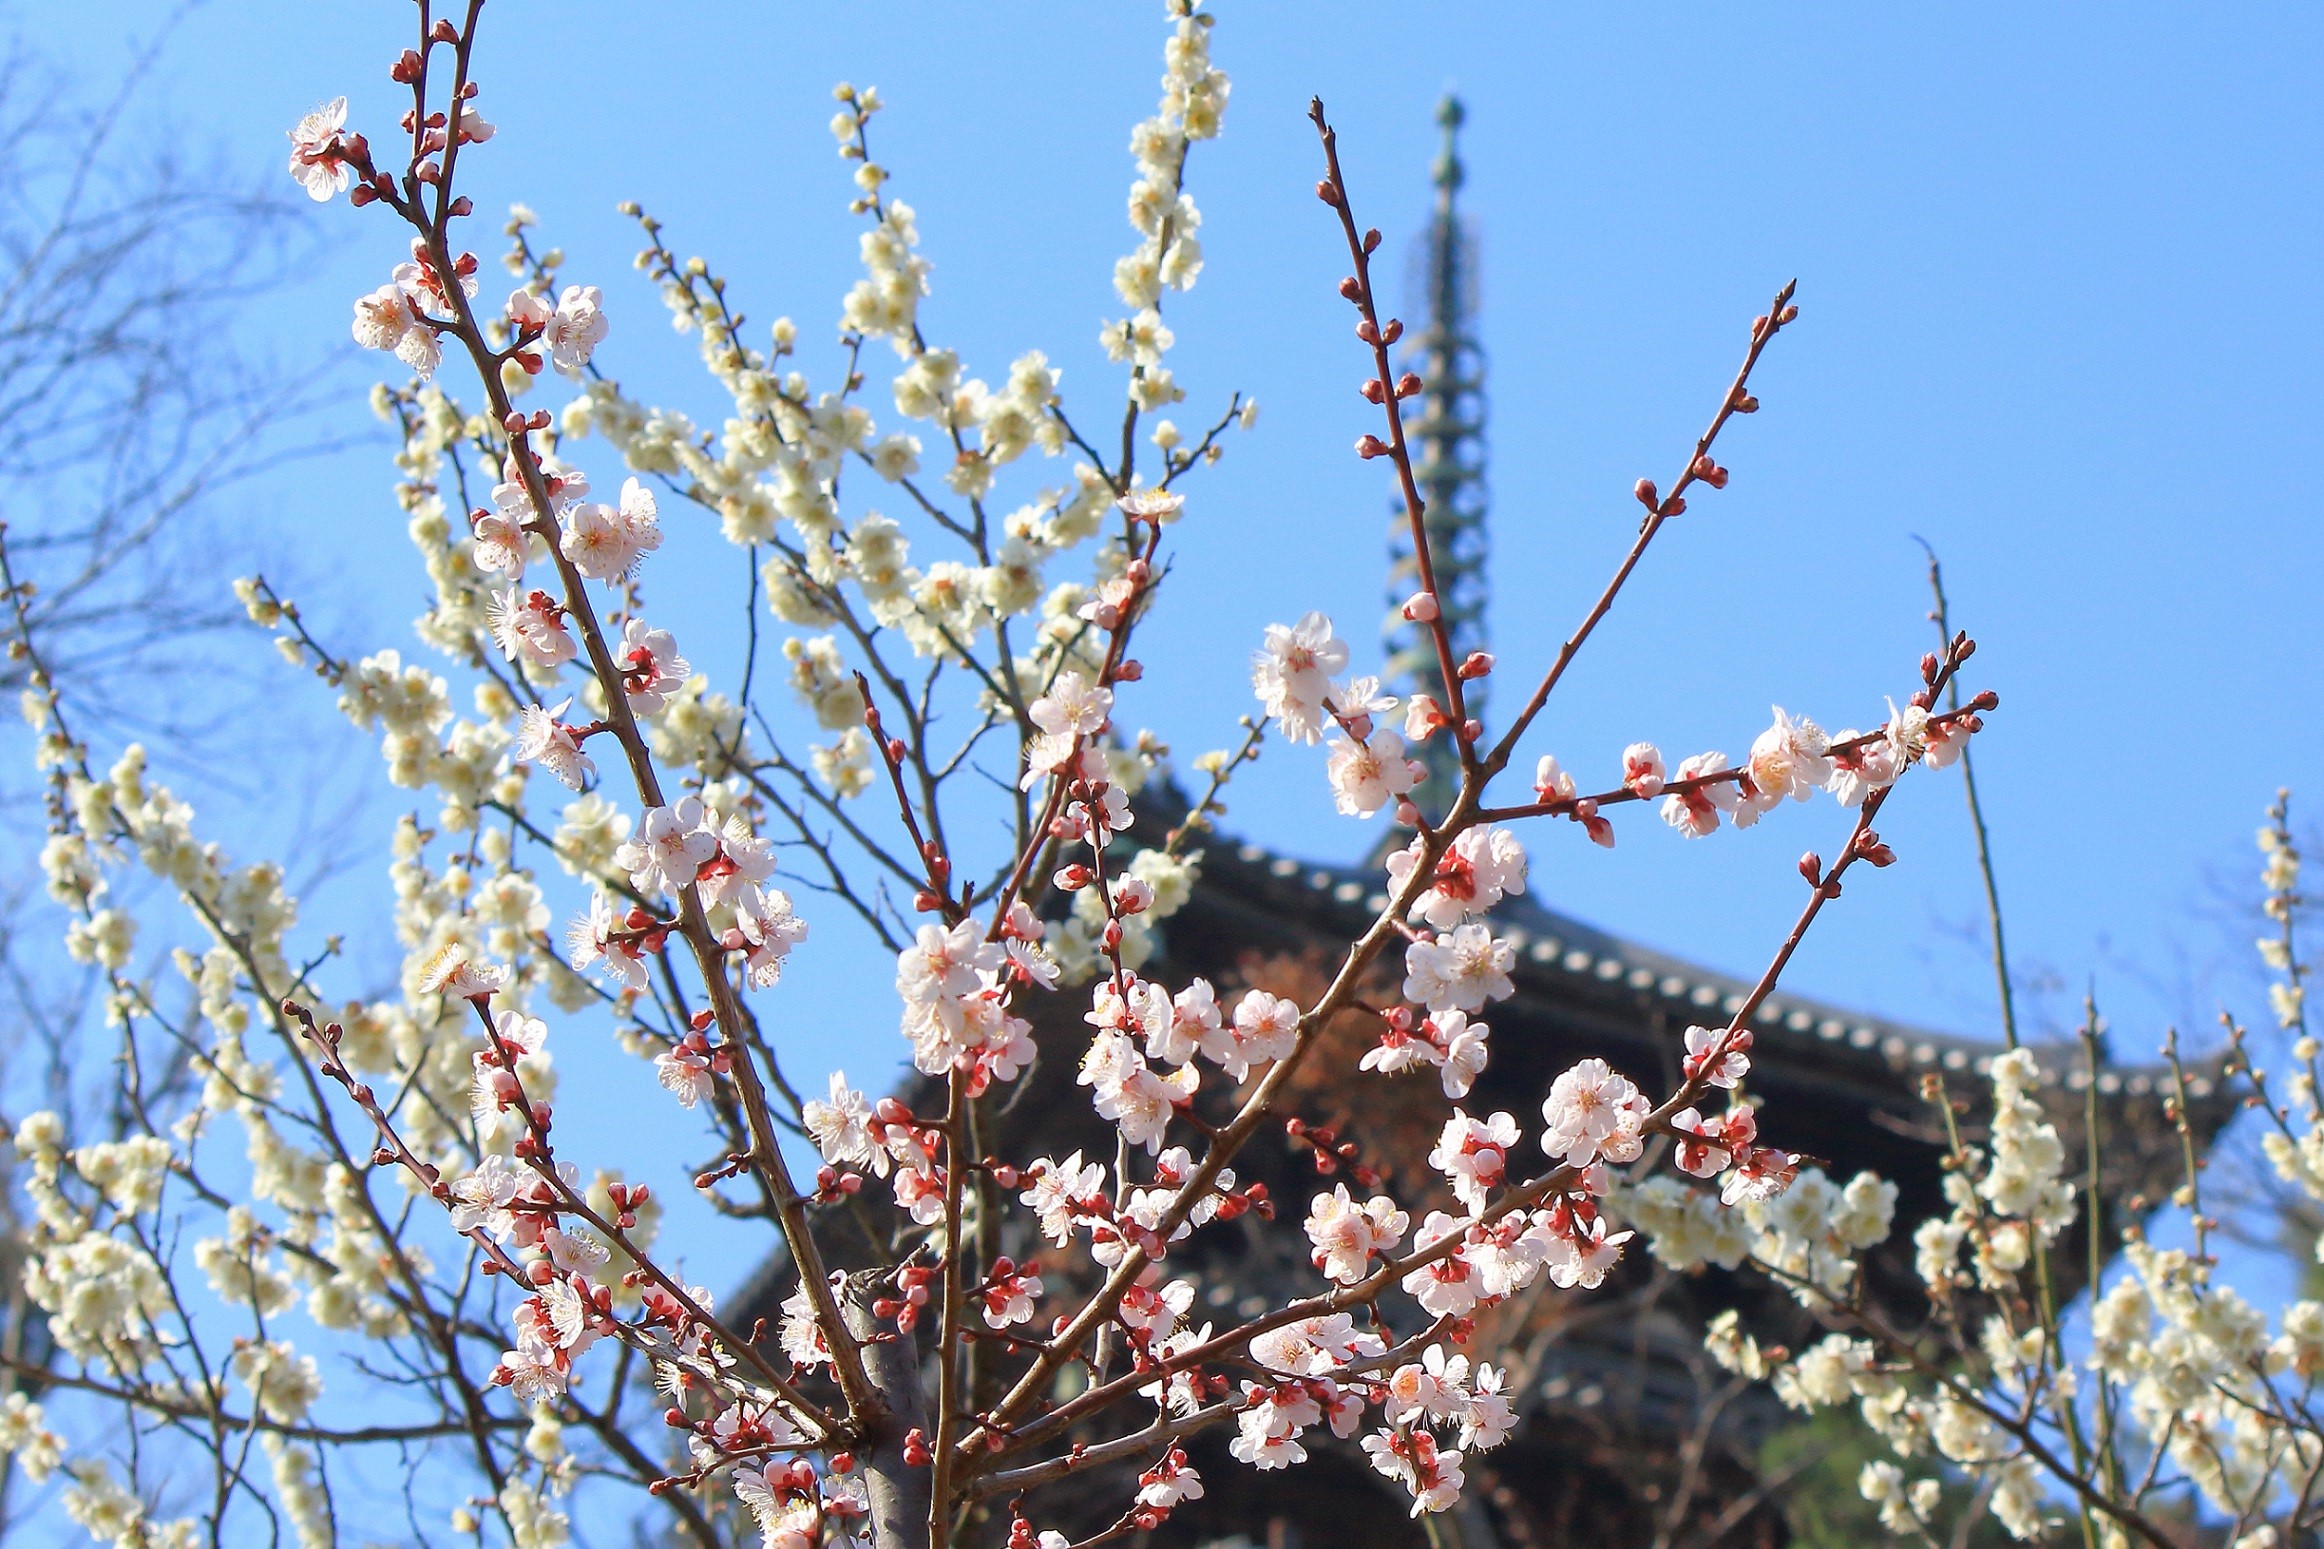 Sankeien Garden Plum blossom viewing (Plum Bonsai Exhibition)
